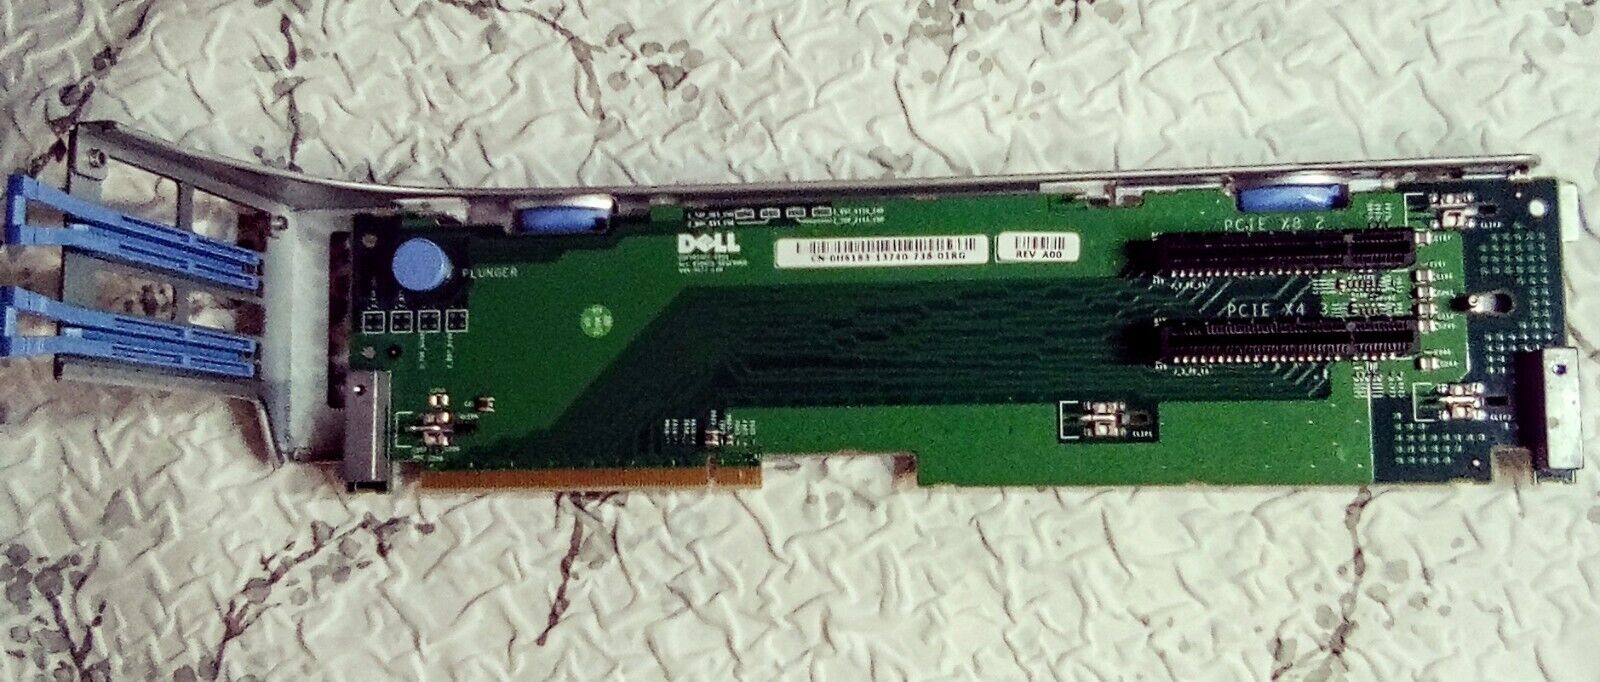 (2Pcs)  Dell 0H6183 Riser Card **W/ TRAY** H6183 PCIe x8 x4 PowerEdge 2950 2970 